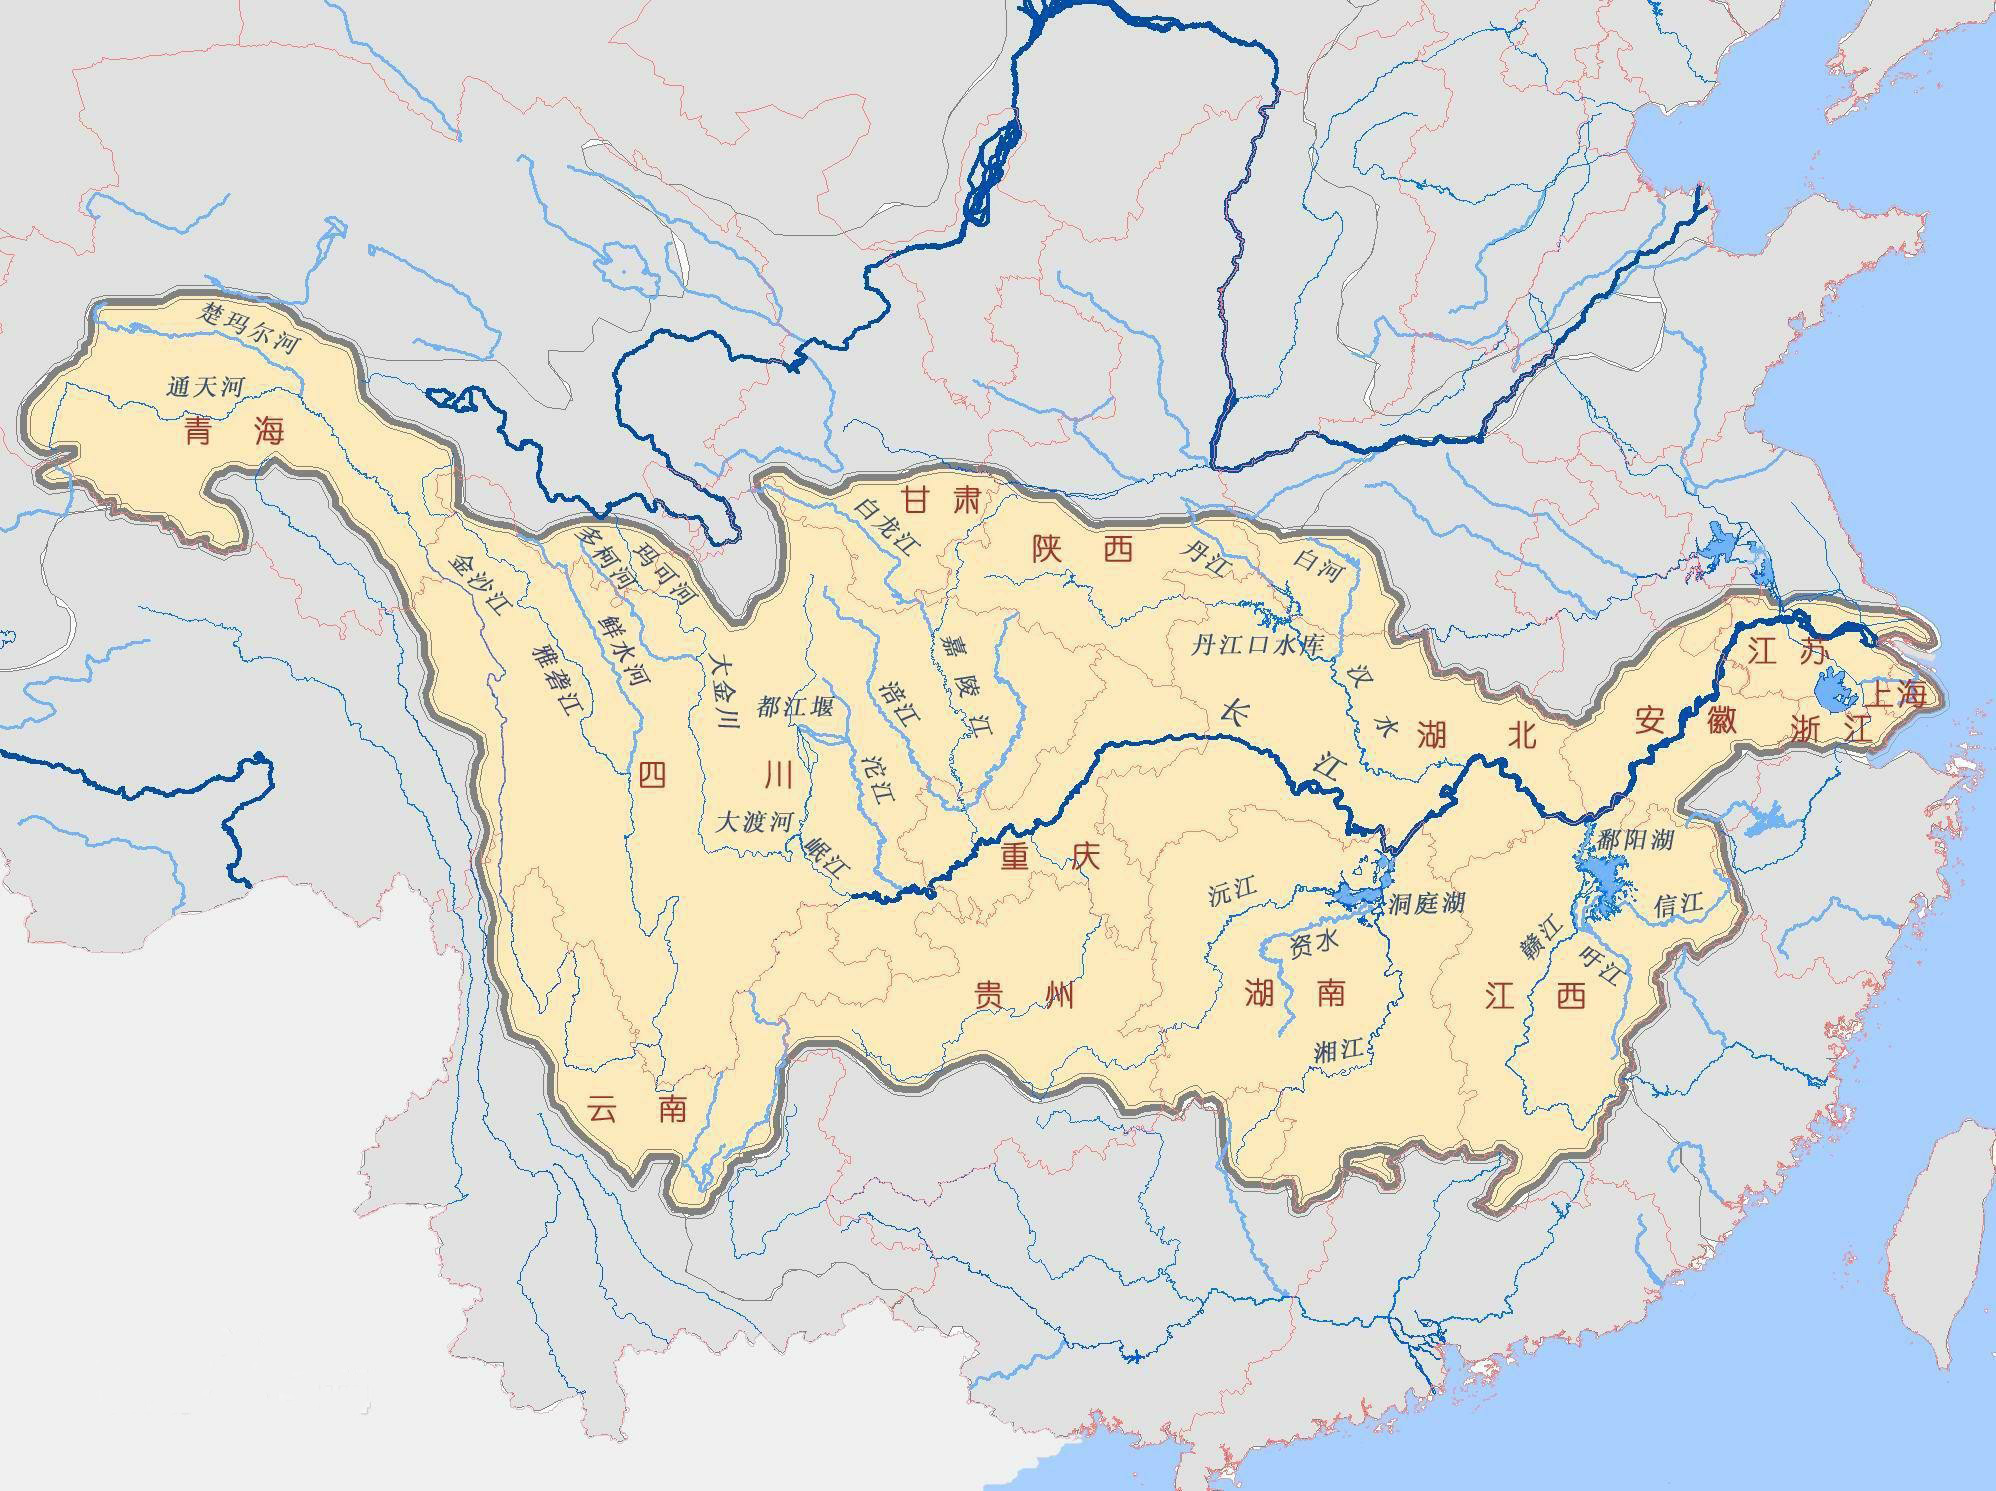 长江干流流经11个省级行政区,于崇明岛以东注入东海,全长6387公里,是